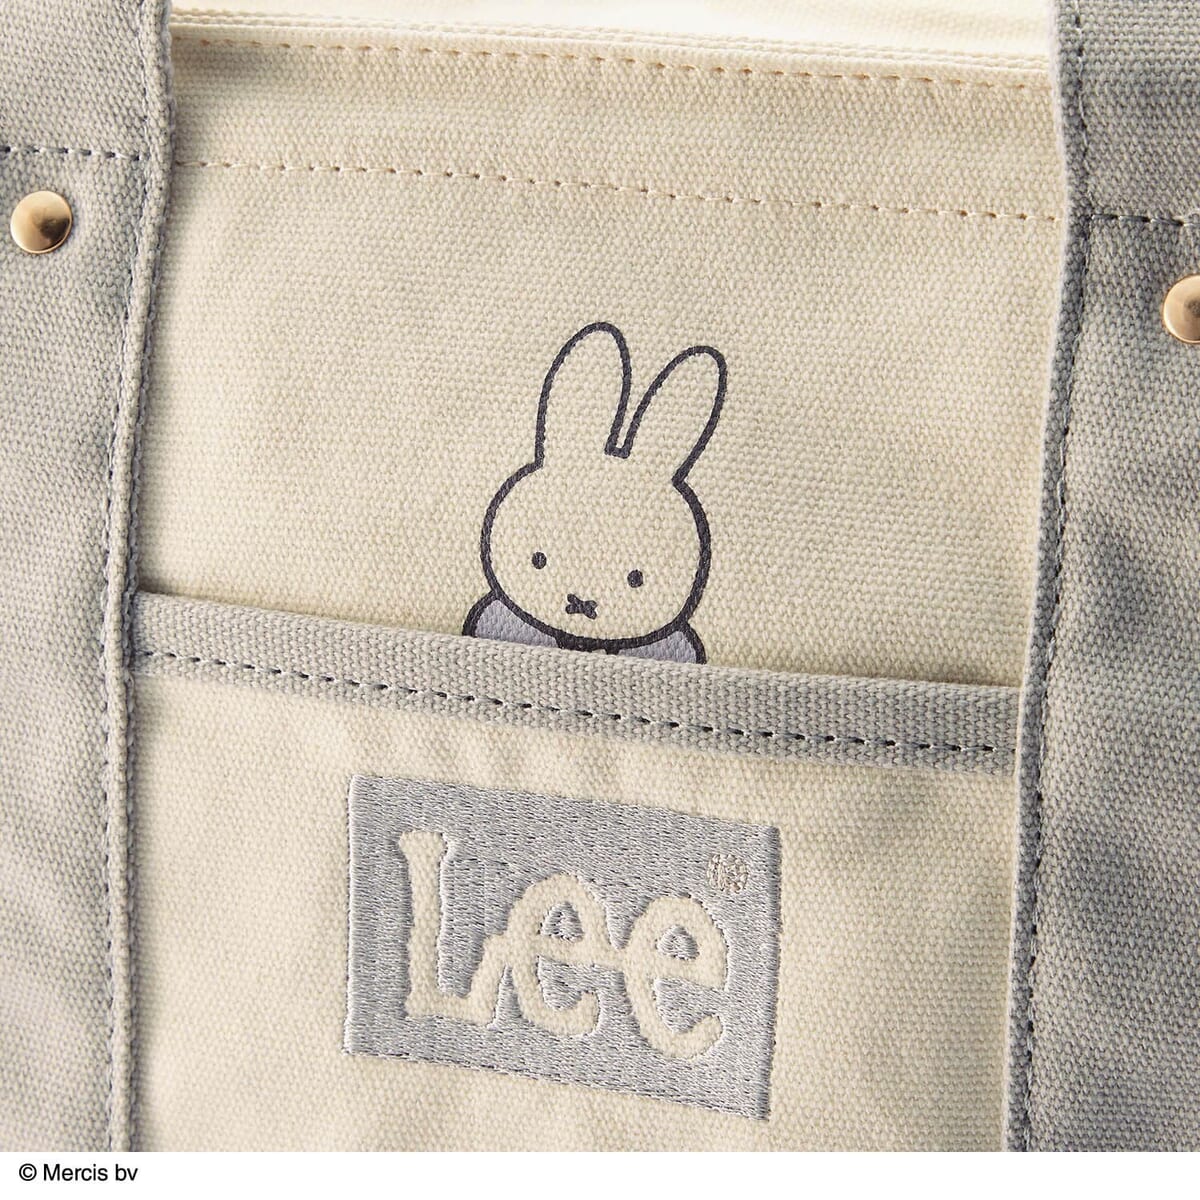 Leeの刺繍ロゴを施したポケット